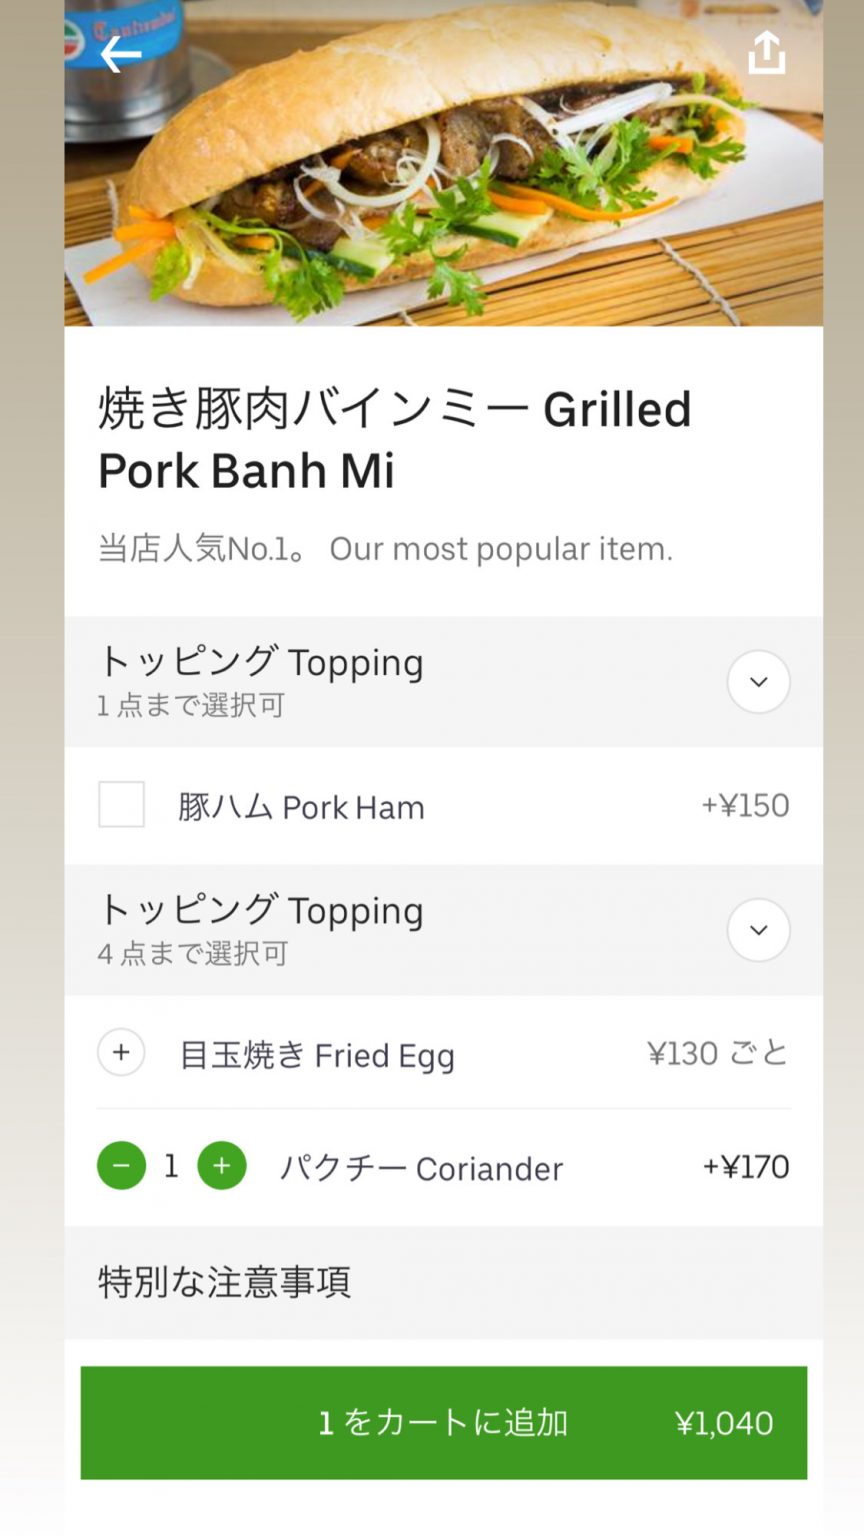 「焼き豚肉バインミー」に、納豆とパクチーも合うのでトッピングはパクチーを選択。